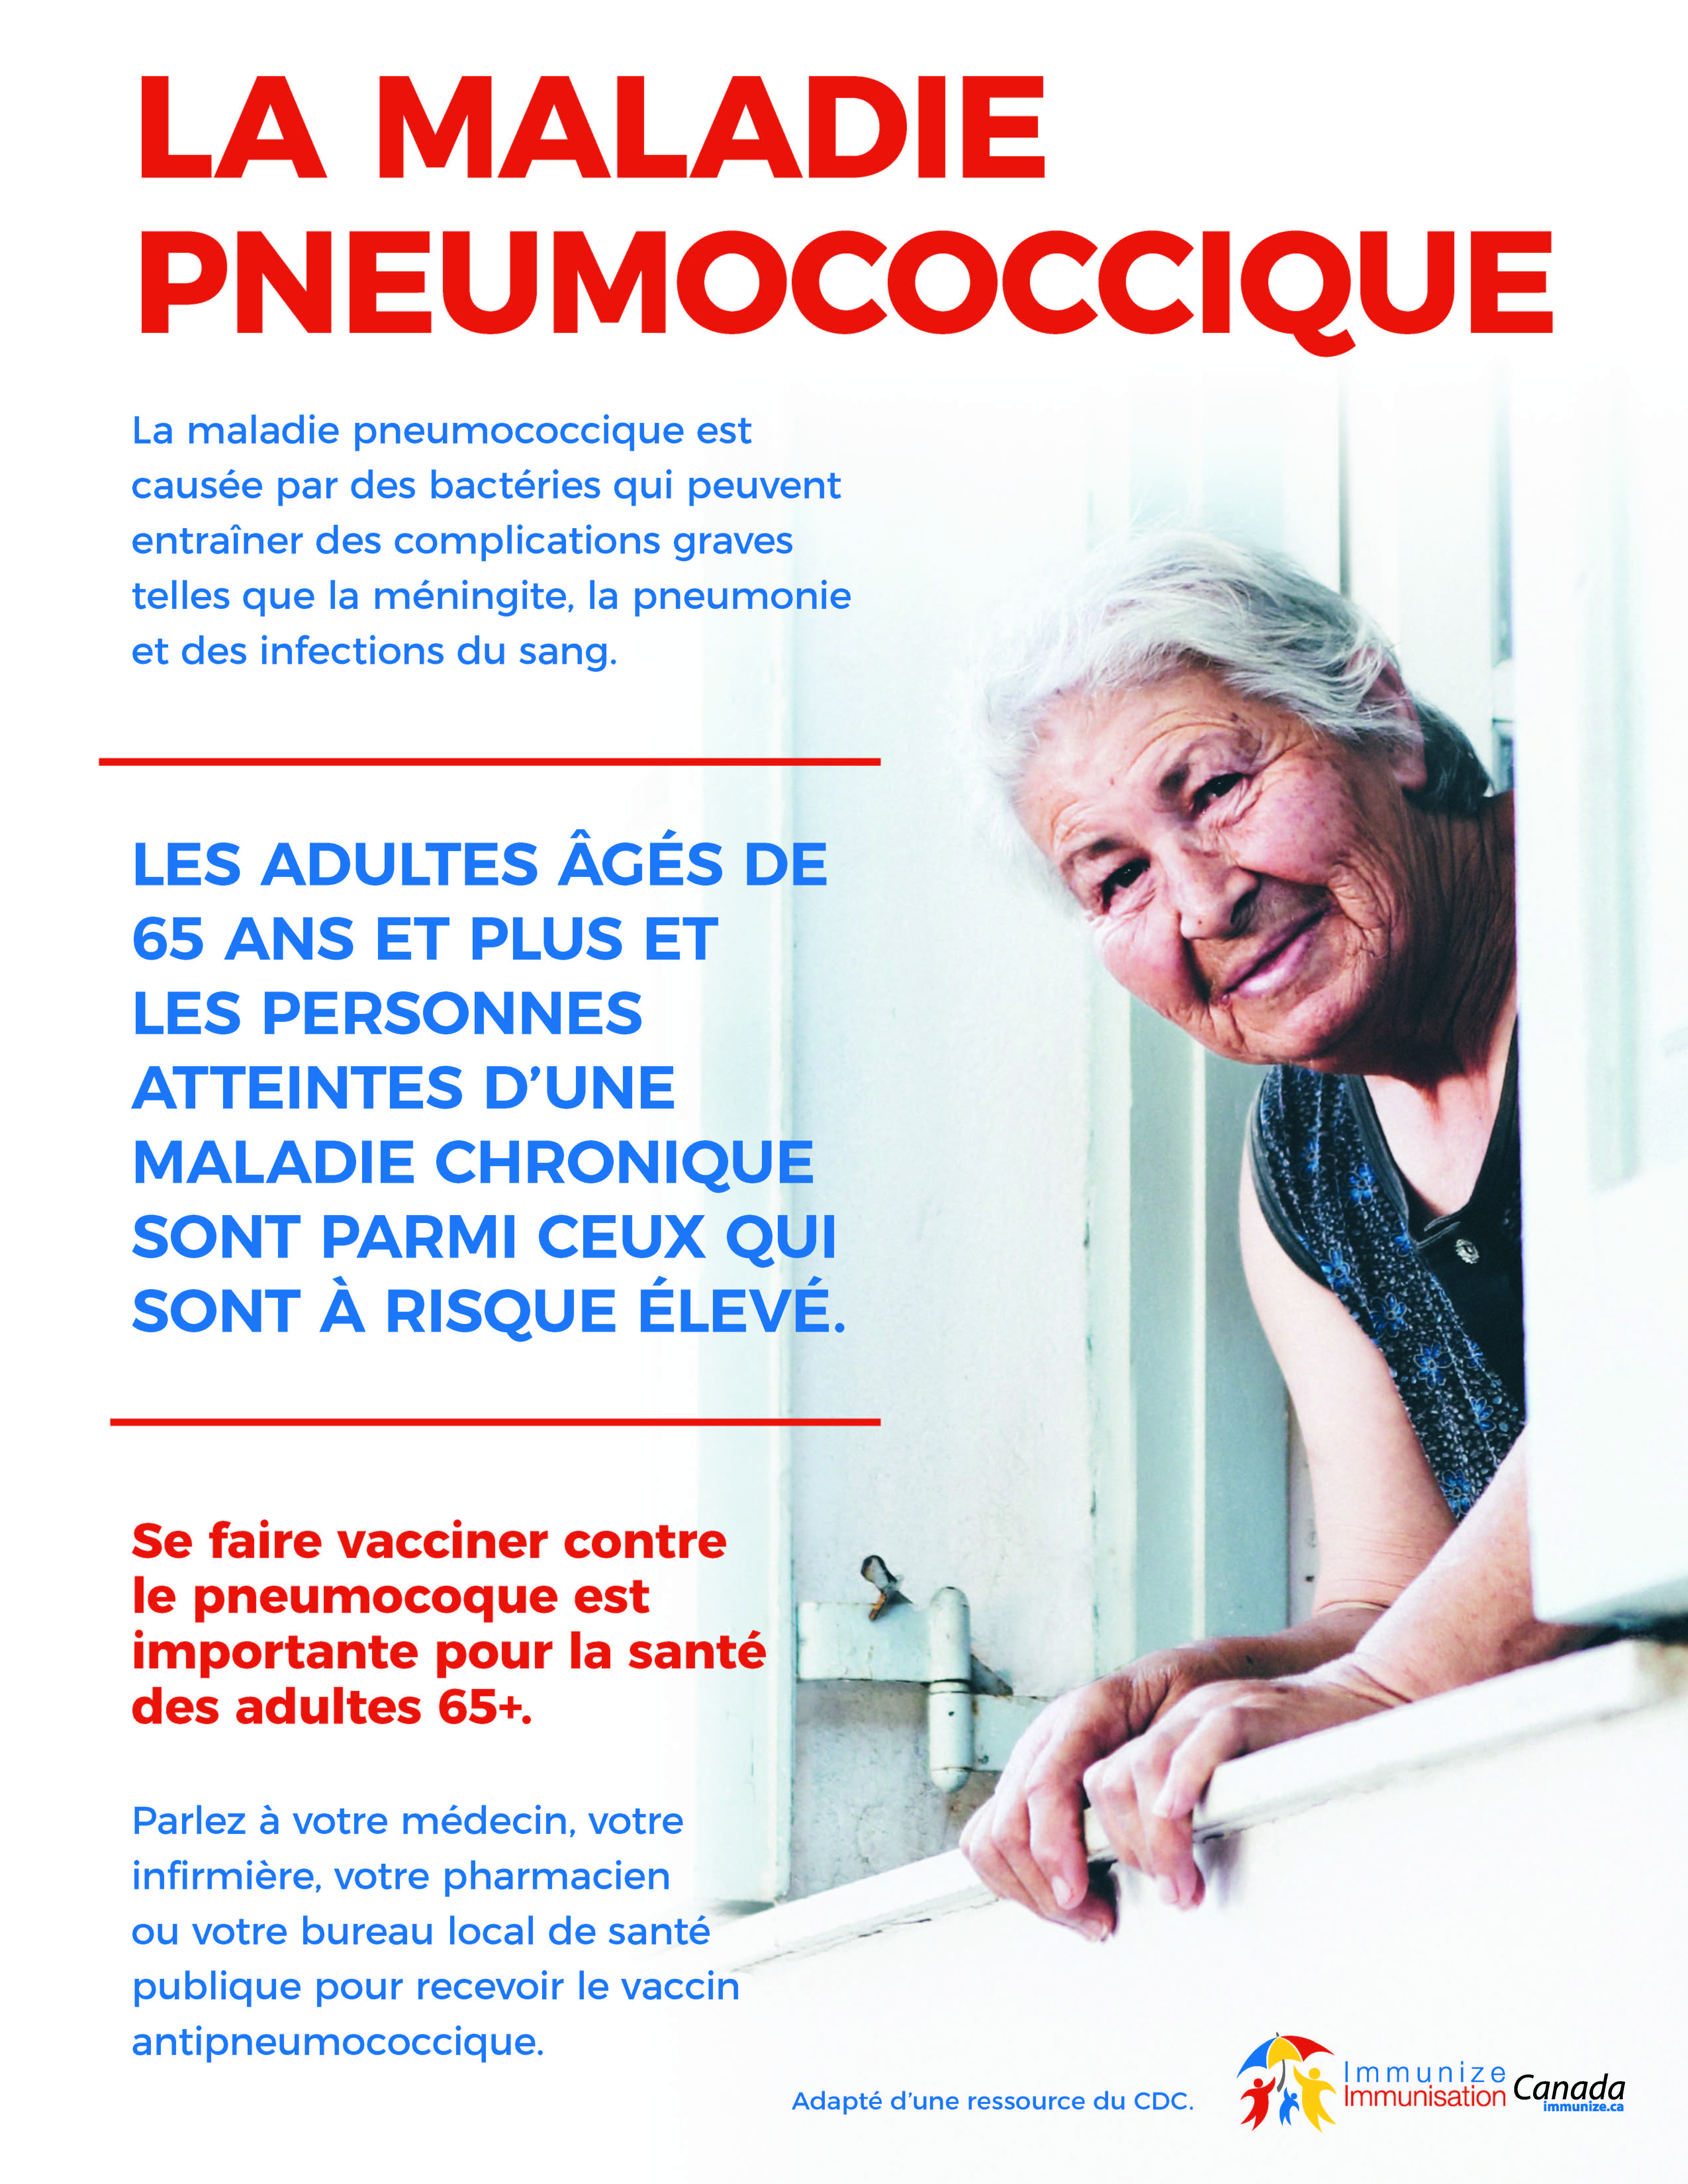 La maladie pneumococcique : les adultes 65+ et les personnes atteintes d'une maladie chronique